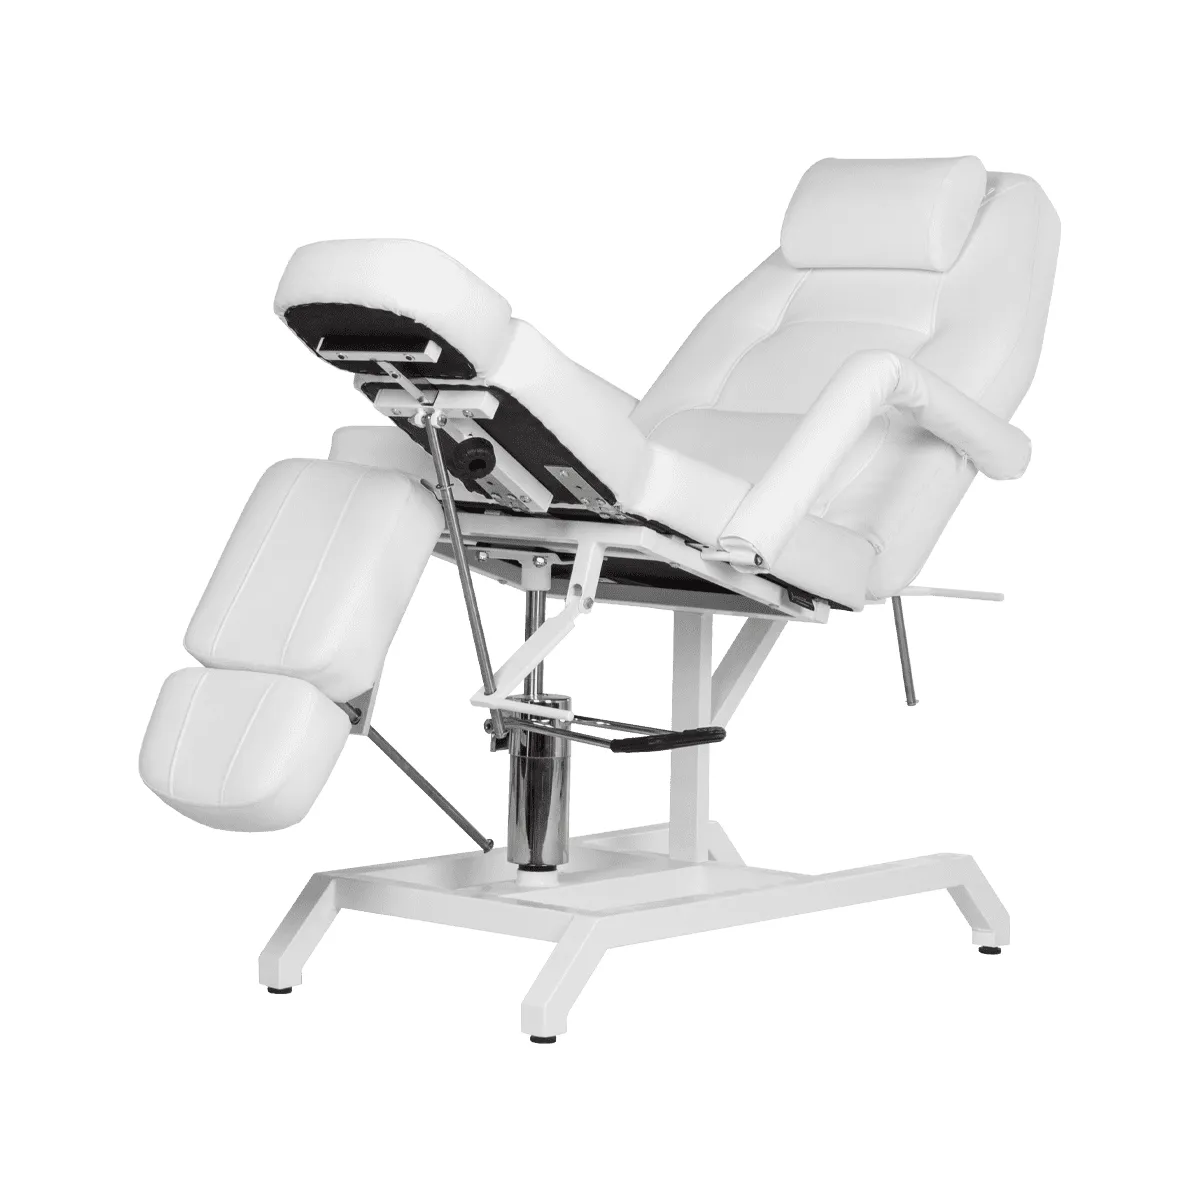 Педикюрное кресло Клио, гидравлика - 3 